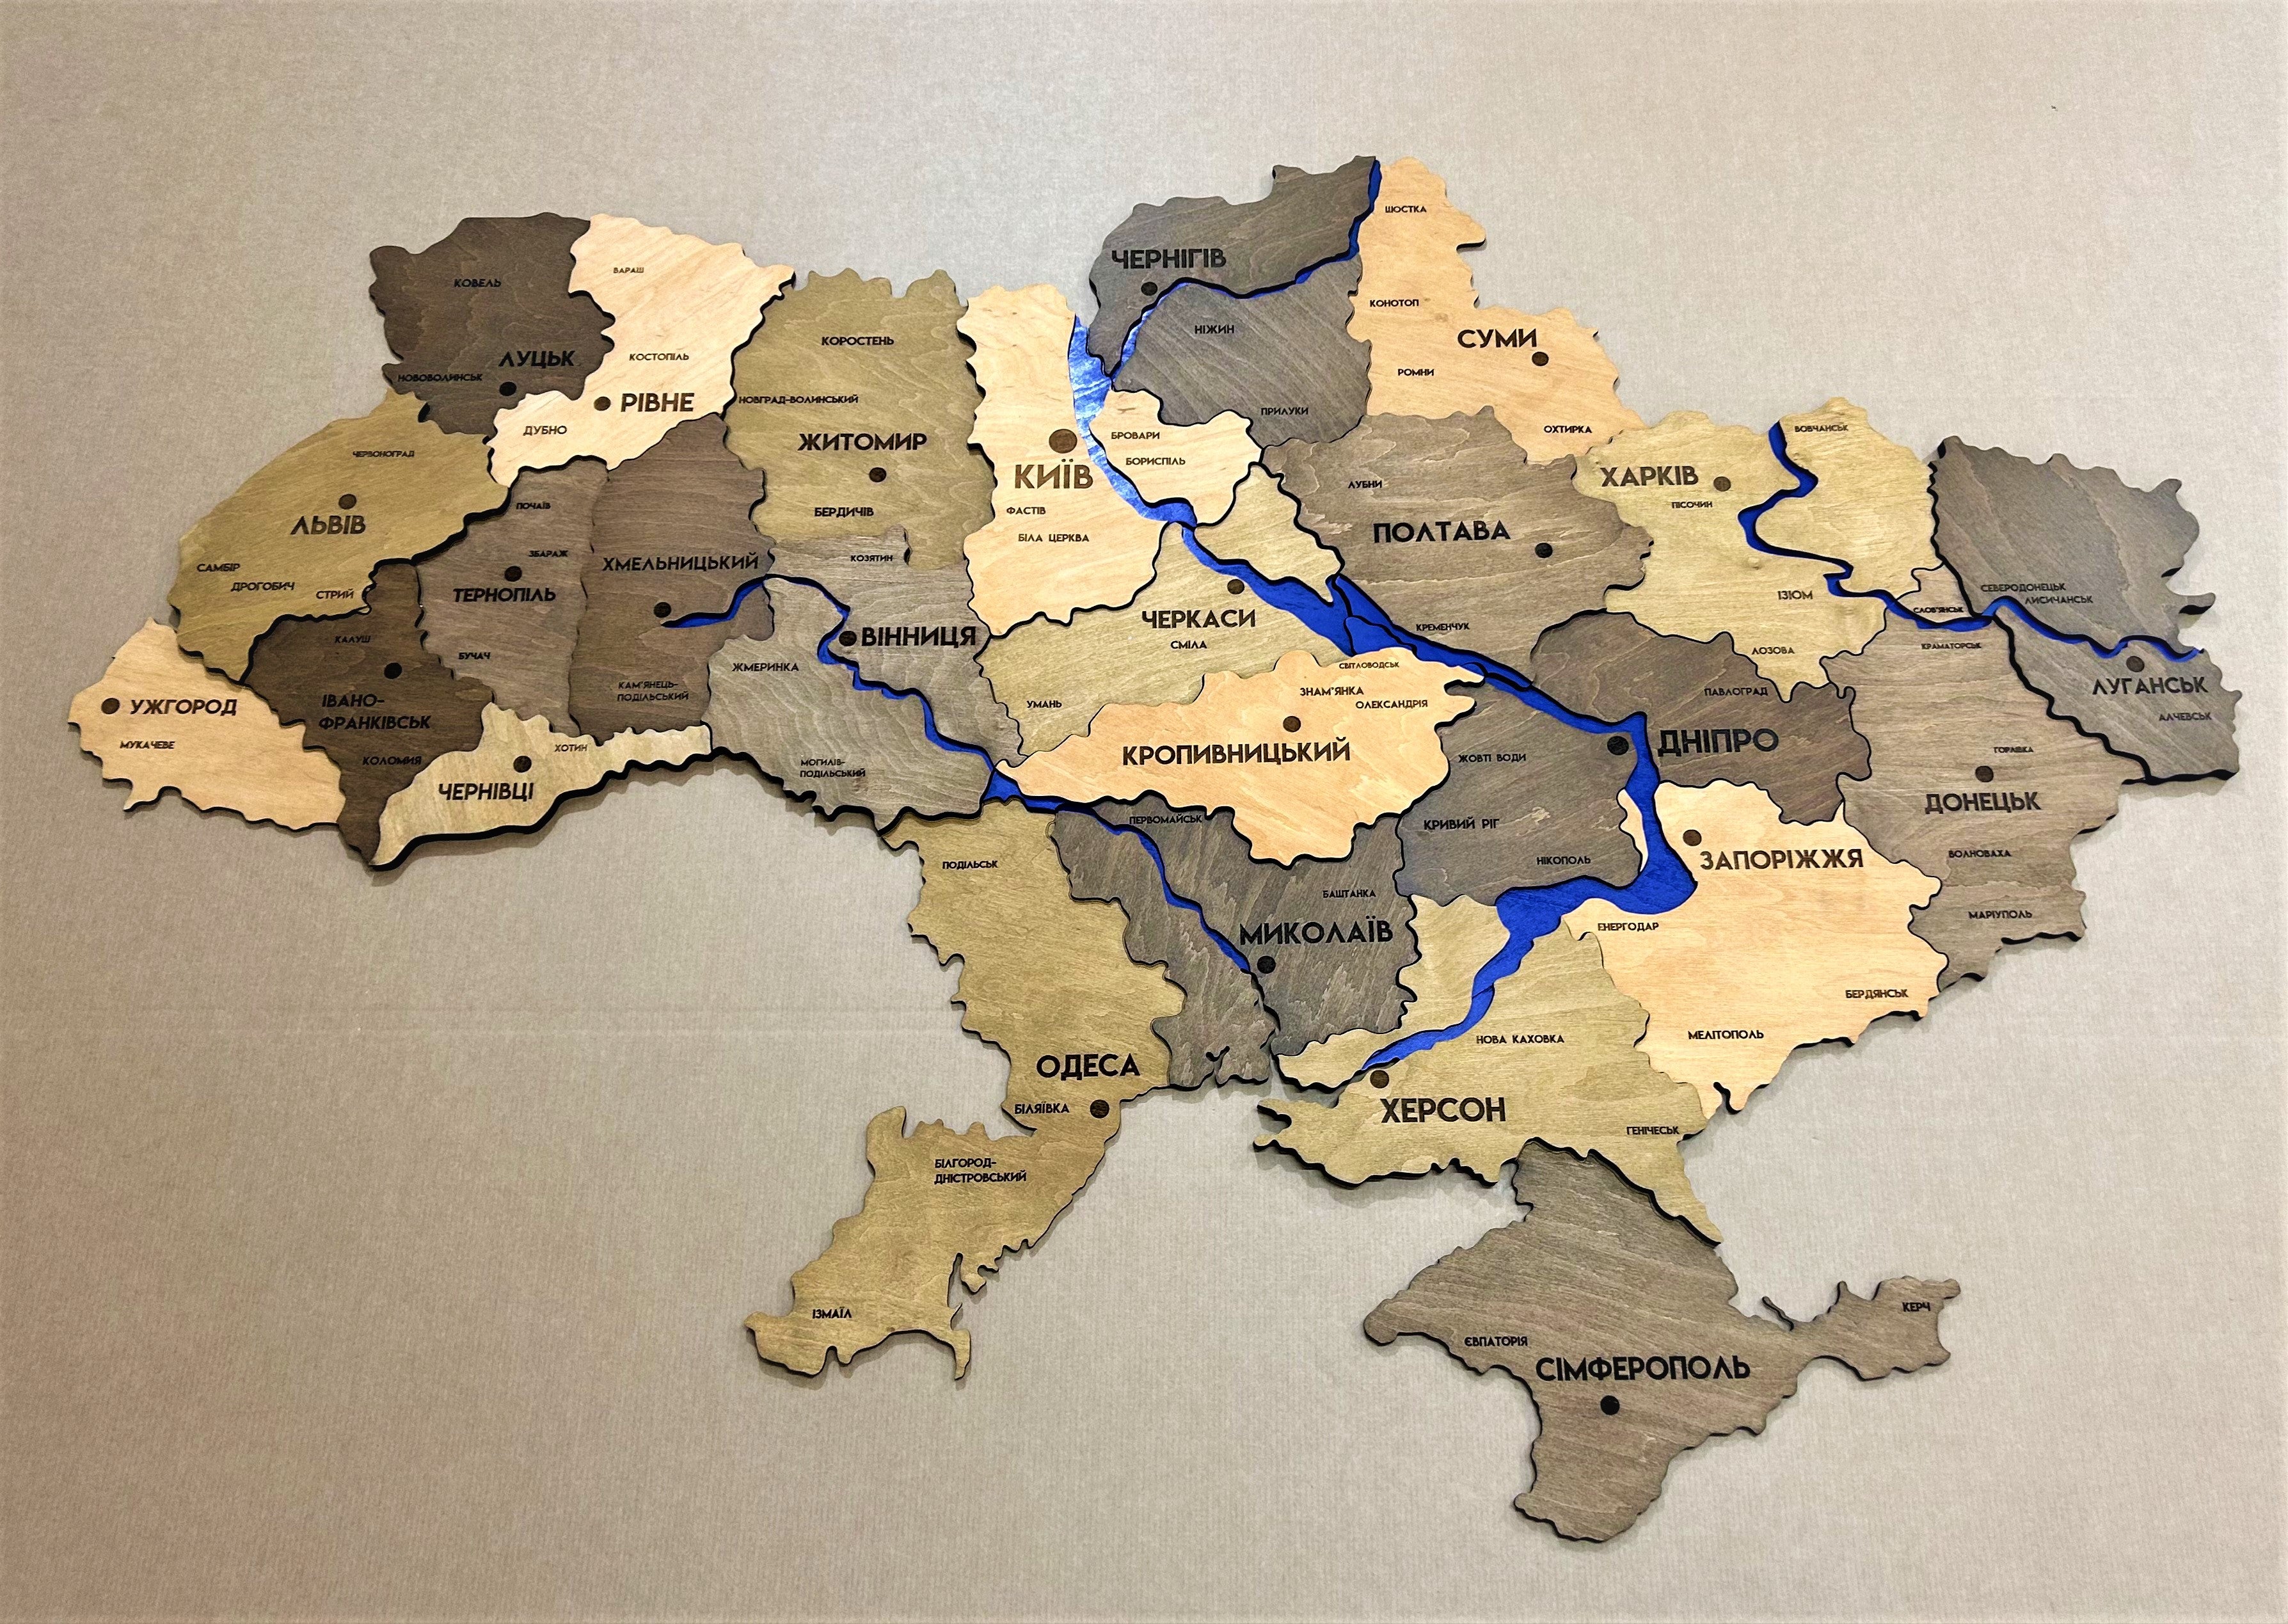 ukraine-3d-map-with-rivers-color-elis